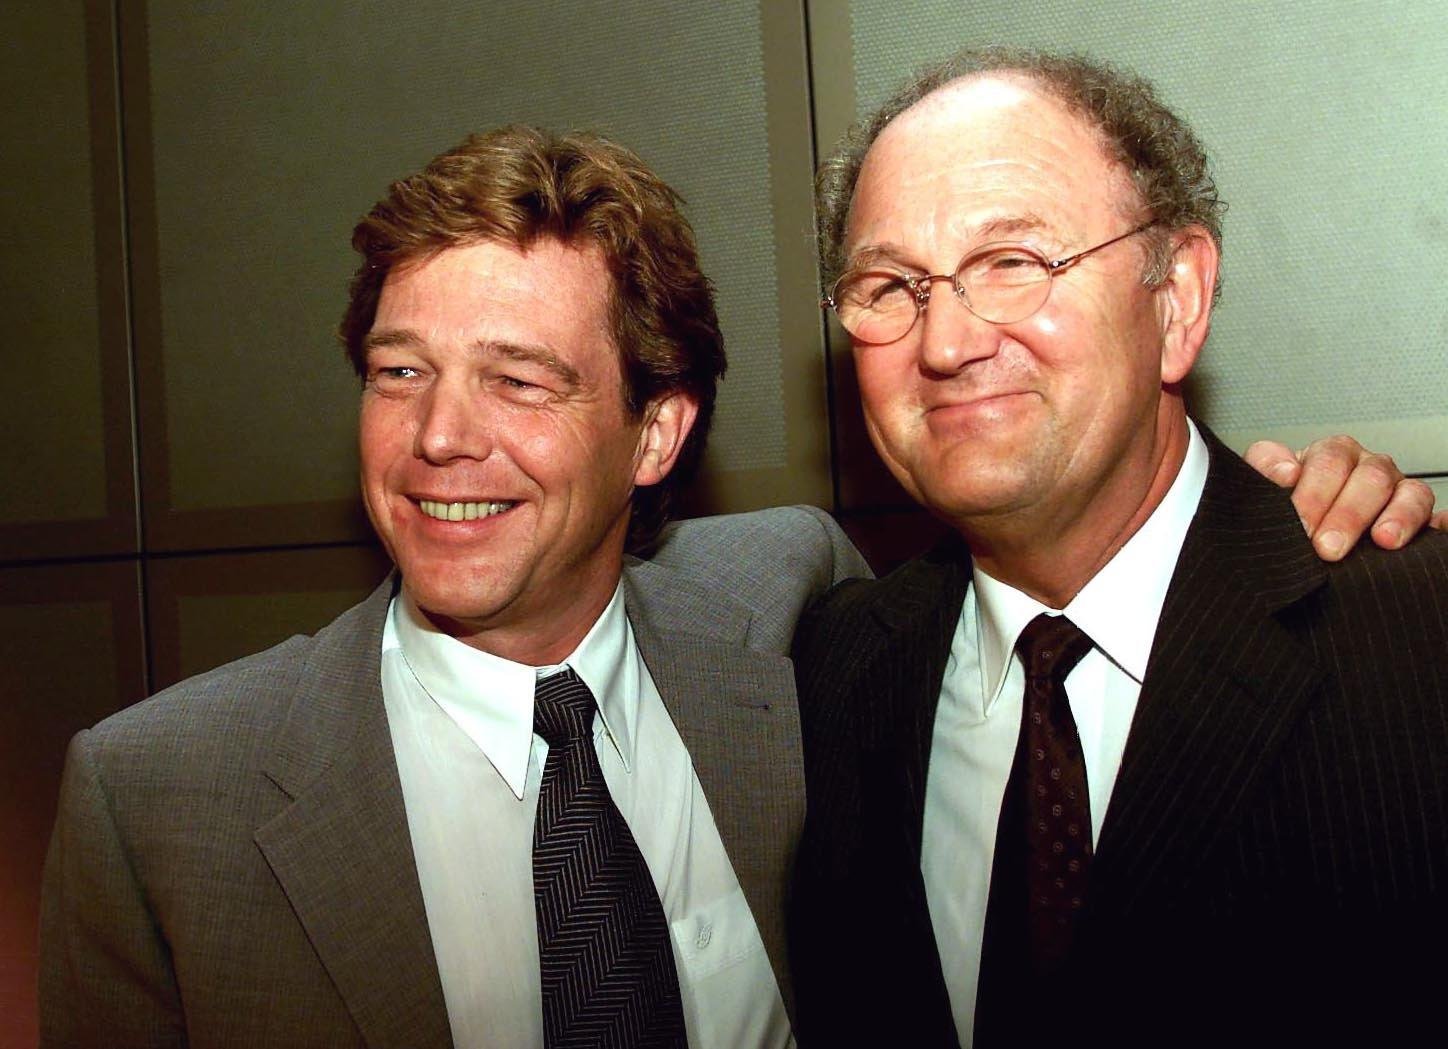 John de Mol en Joop van den Ende na de persconferentie over de overname door Telefónica in 2000. Foto: ANP